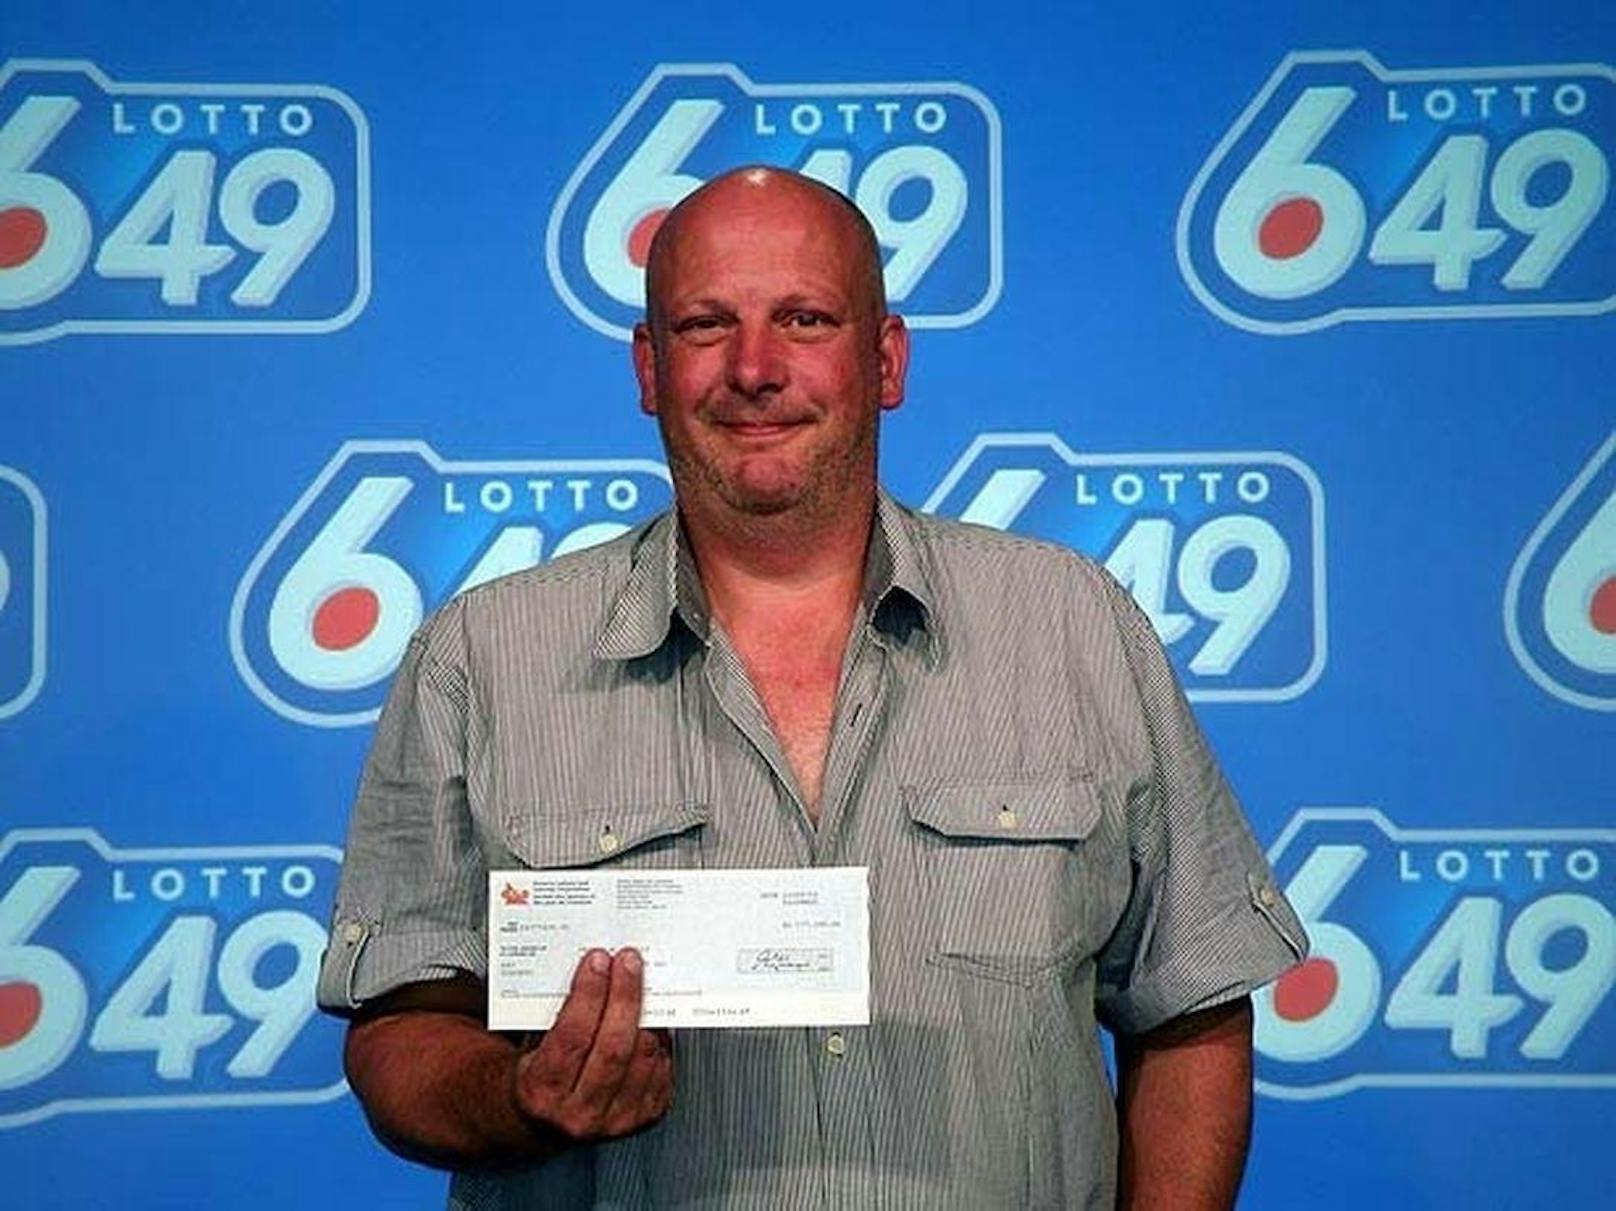 Barry Shell ist ebenfalls Lottogewinner. Er gewann 2009 in Kanada 2,6 Millionen Euro. Mit seinem letzten Geld hatte er die richtigen Zahlen gespielt. Doch das Gewinner-Foto in den Medien hetzte ihm die Polizei auf den Hals. Diese verdächtigte ihn des Diebstahls und spürte ihn prompt auf. Seinen Gewinn überschrieb er einem Verwandten.